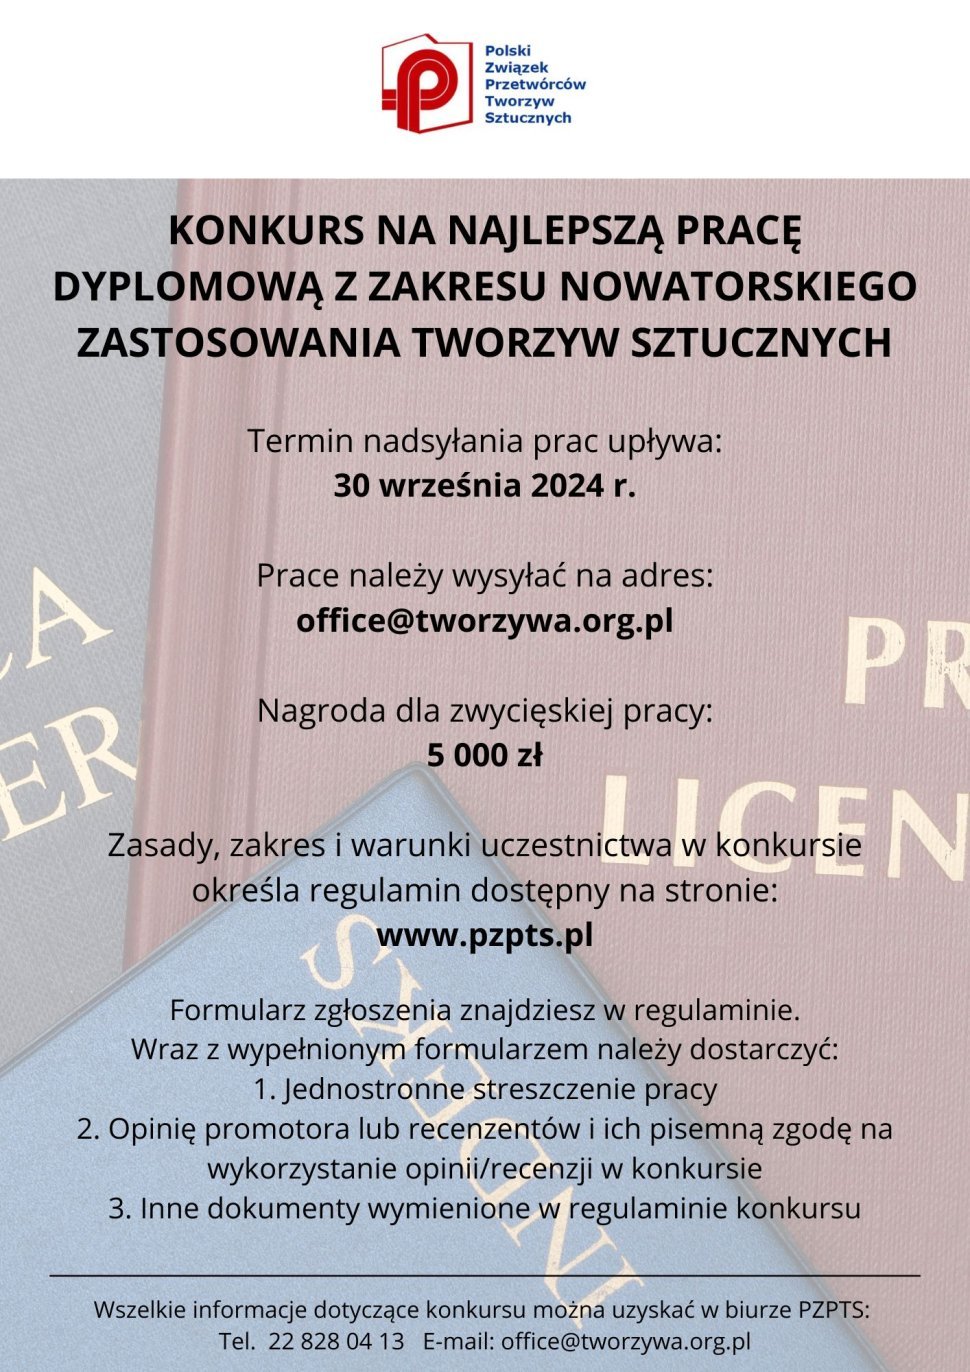 Plakat przedstawiający treść konkursu Polskiego Związku Przetwórców Tworzyw Sztucznych